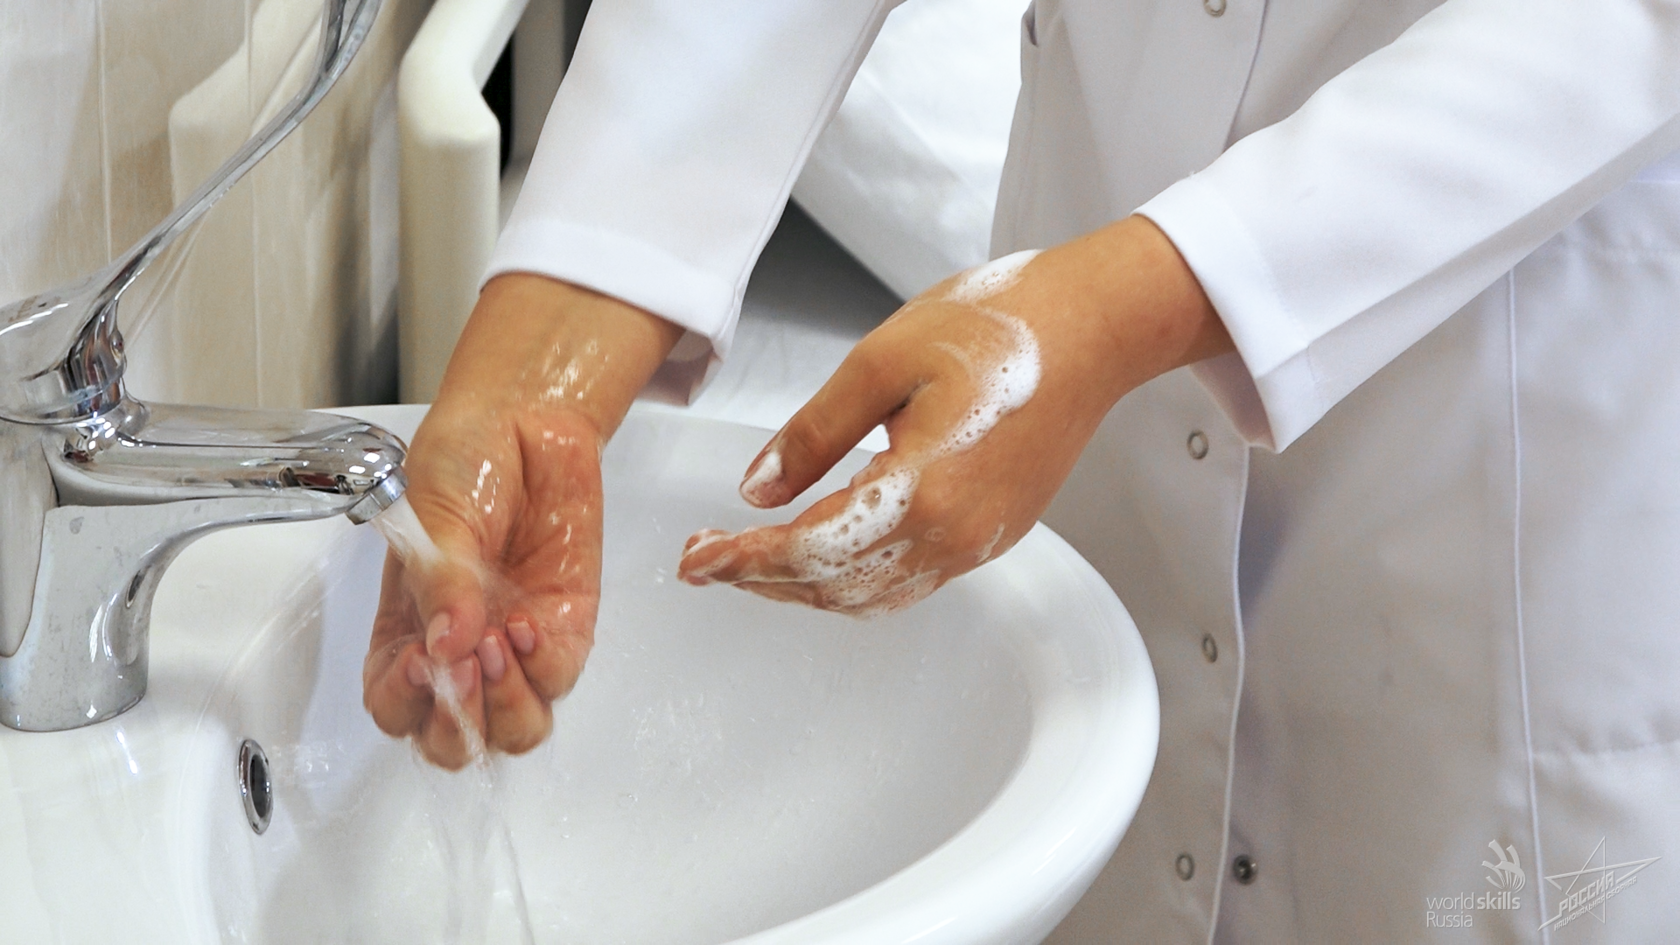 Особое внимание должно быть. Обработка рук. Гигиеническая обработка рук. Гигиеническое мытье рук. Гигиеническая мойка рук.